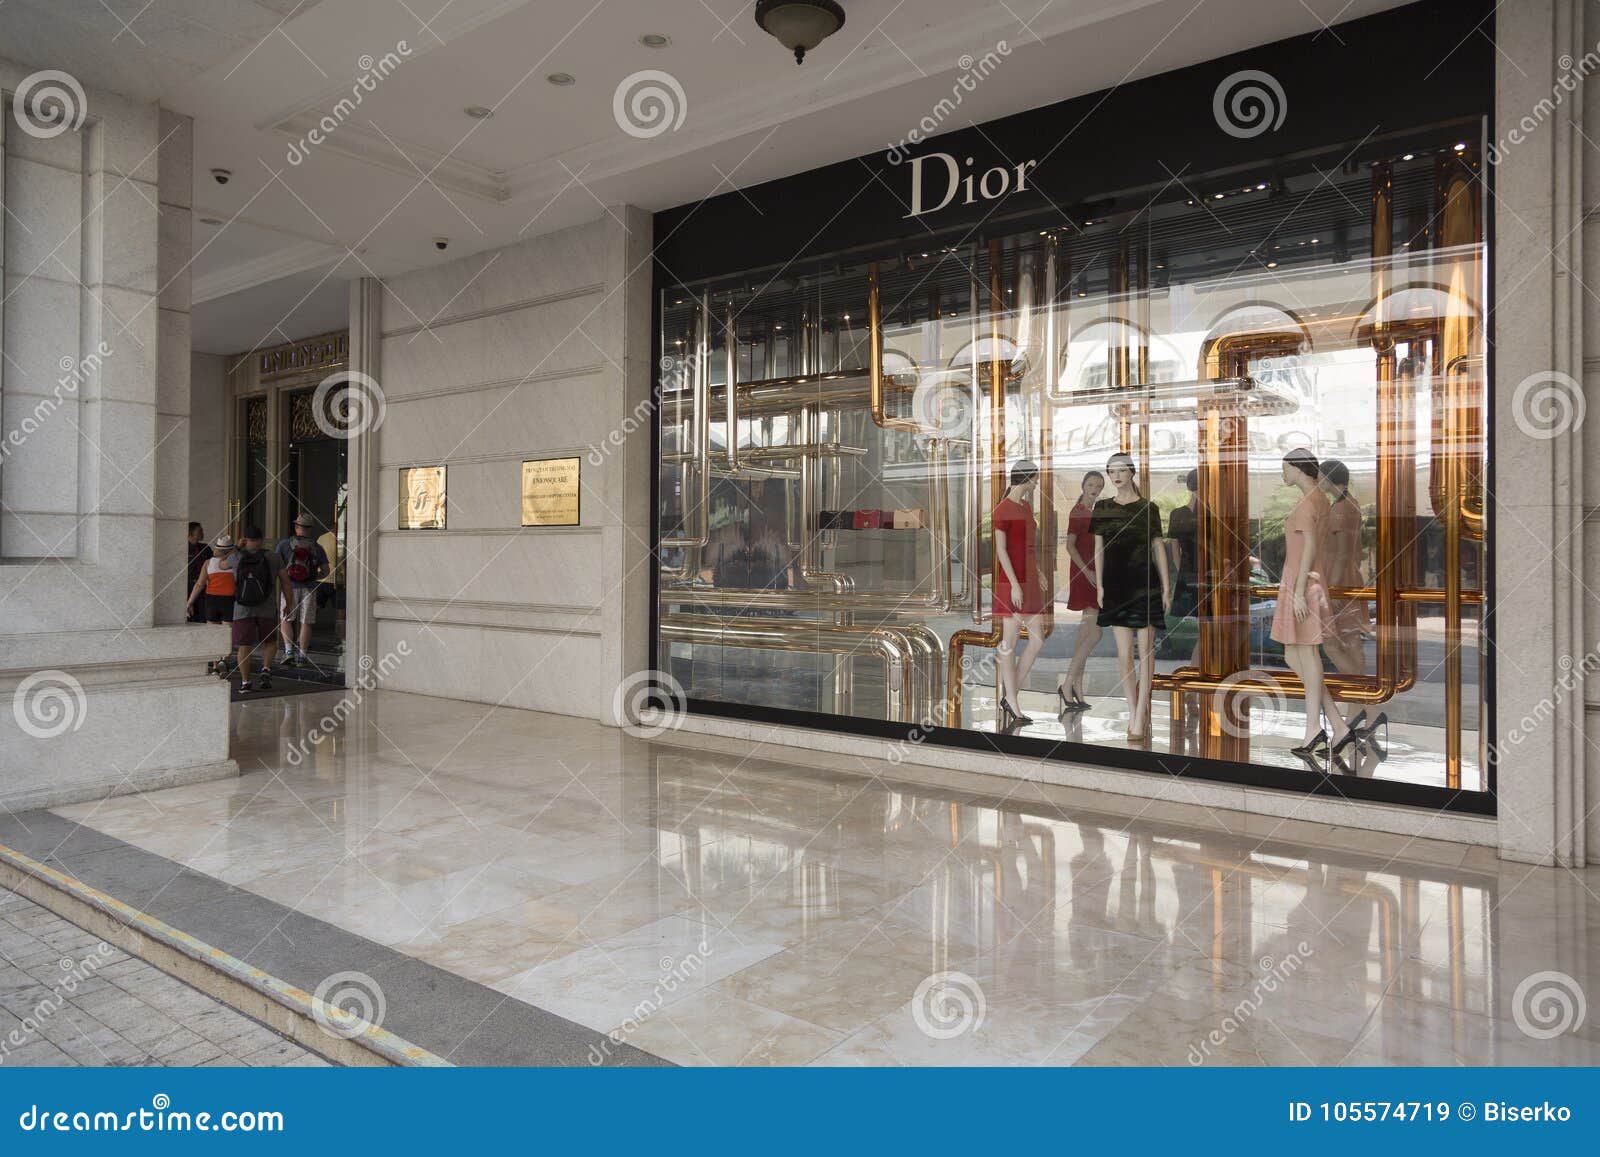 DIOR khai trương boutique lớn nhất Việt Nam tại Vincom Đồng Khởi